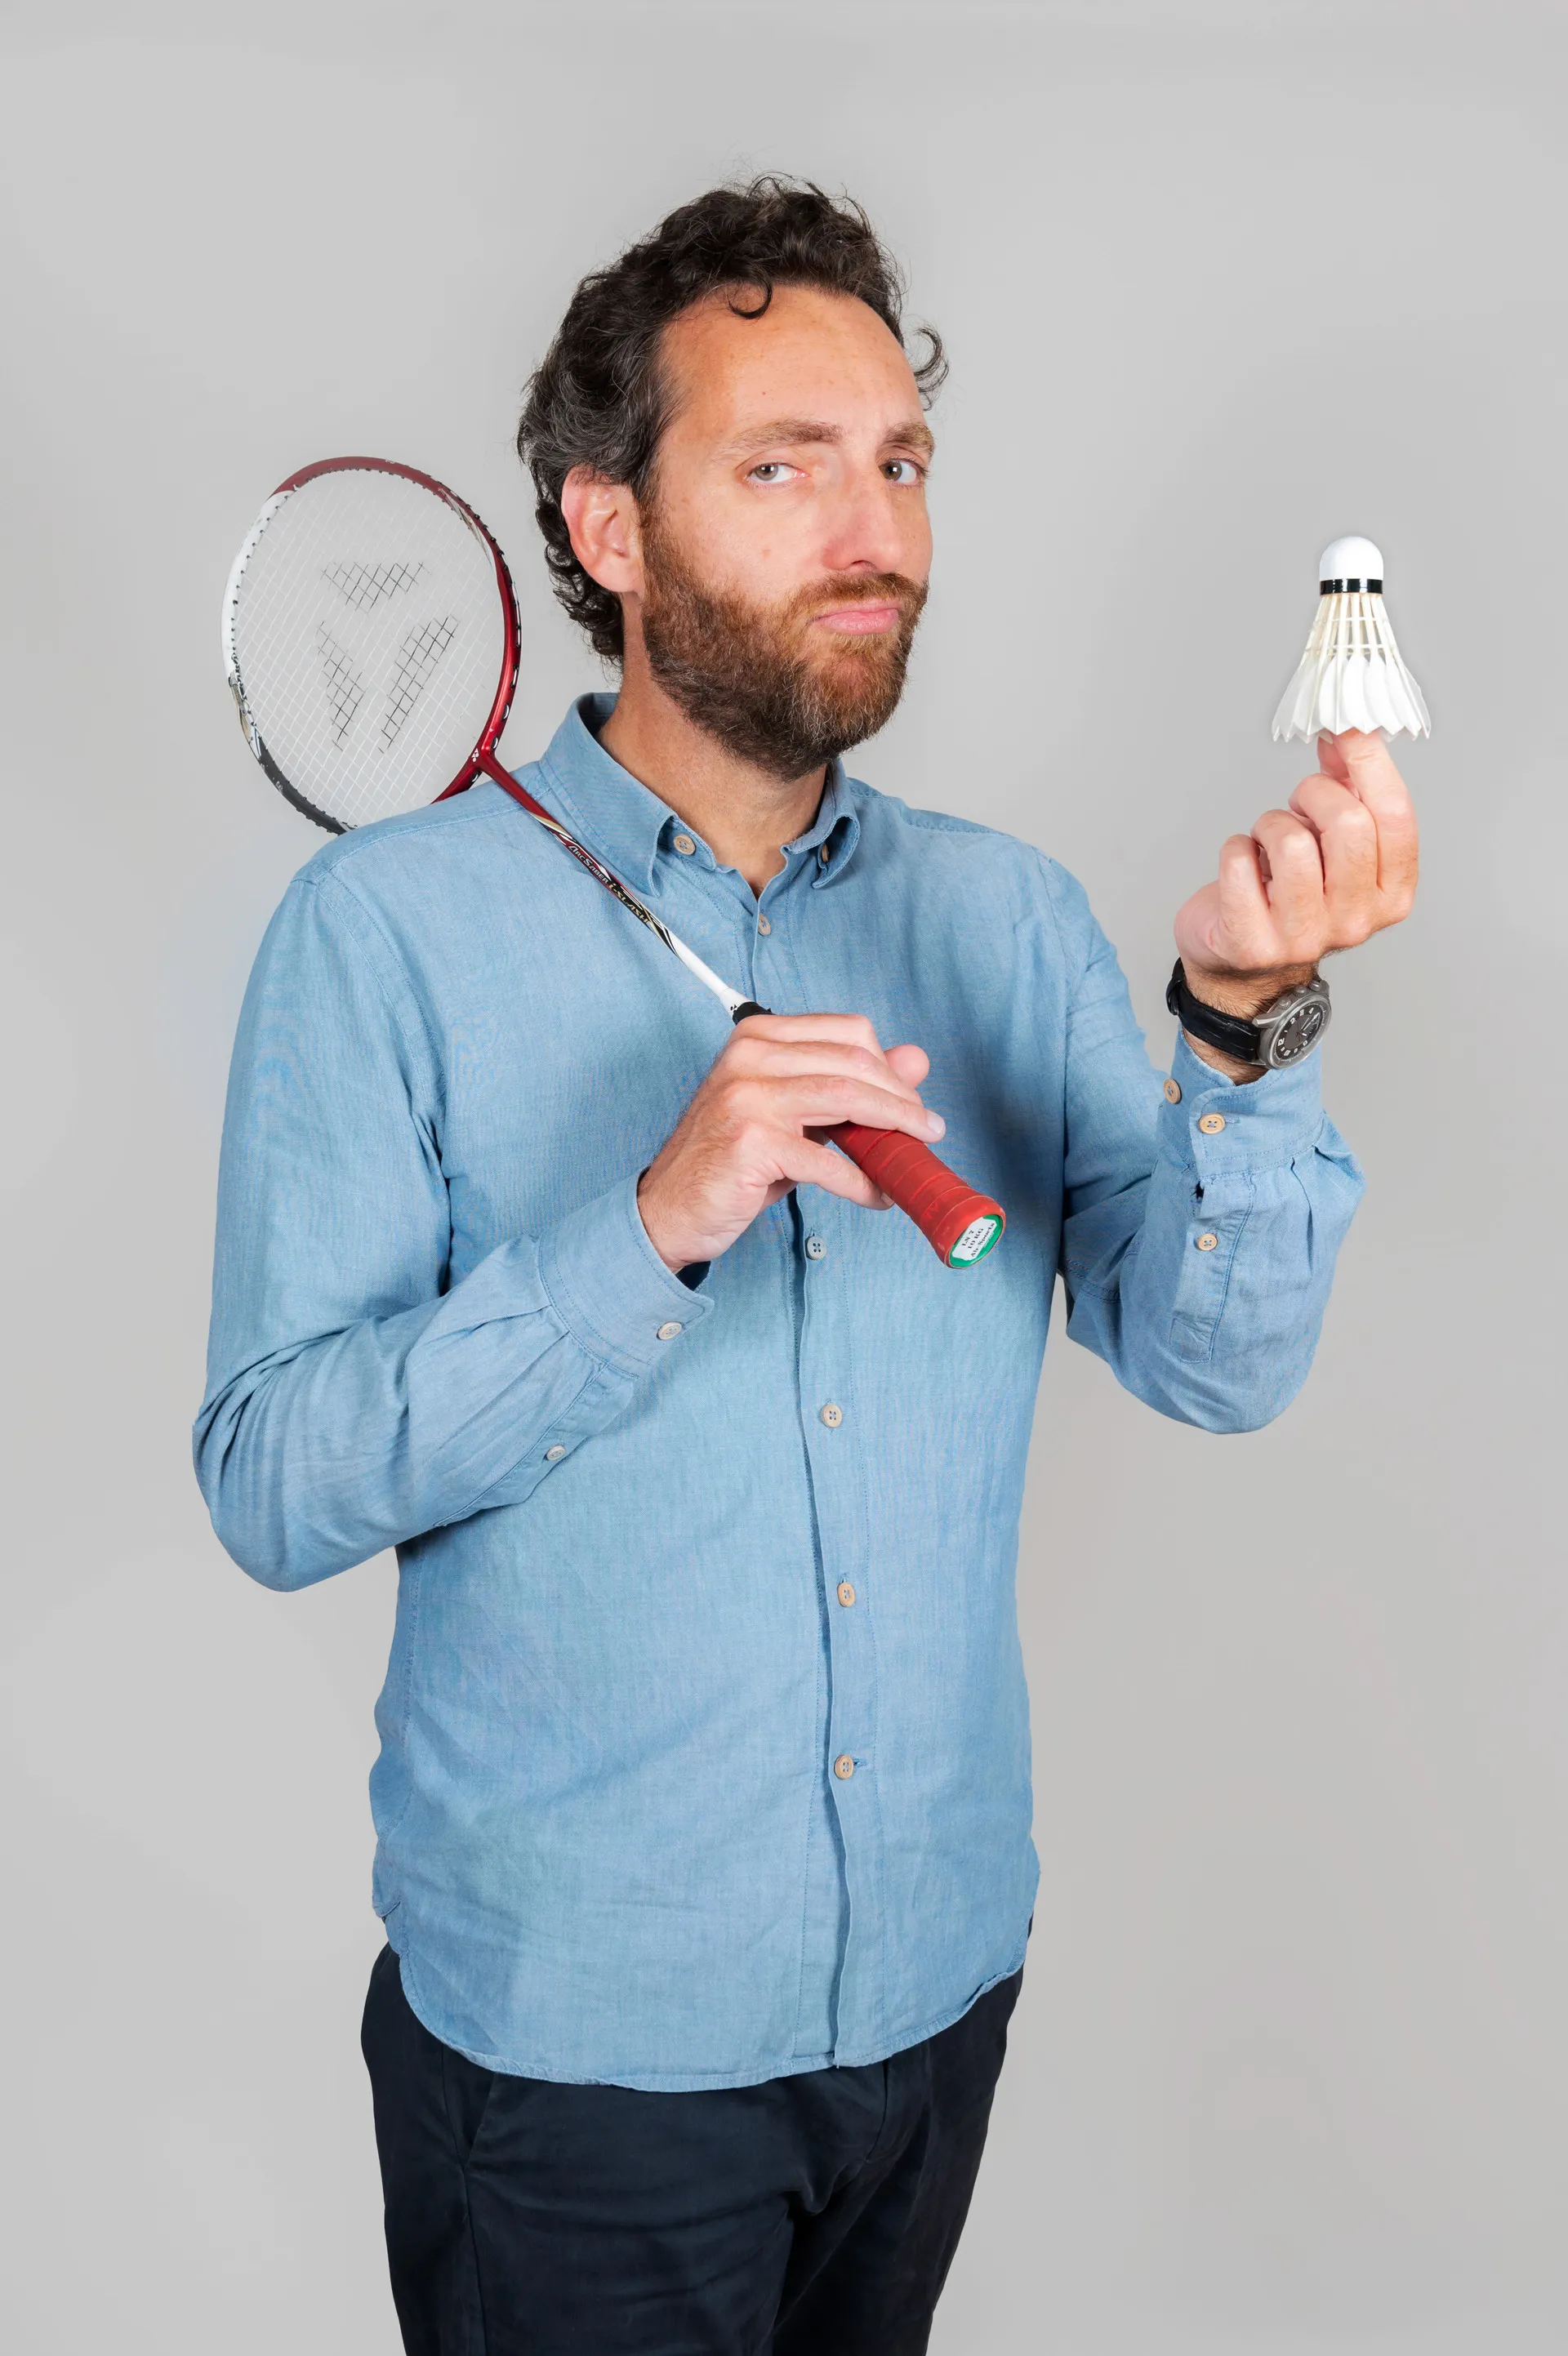 portrait studio d'un homme avec une raquette et un volant de badminton